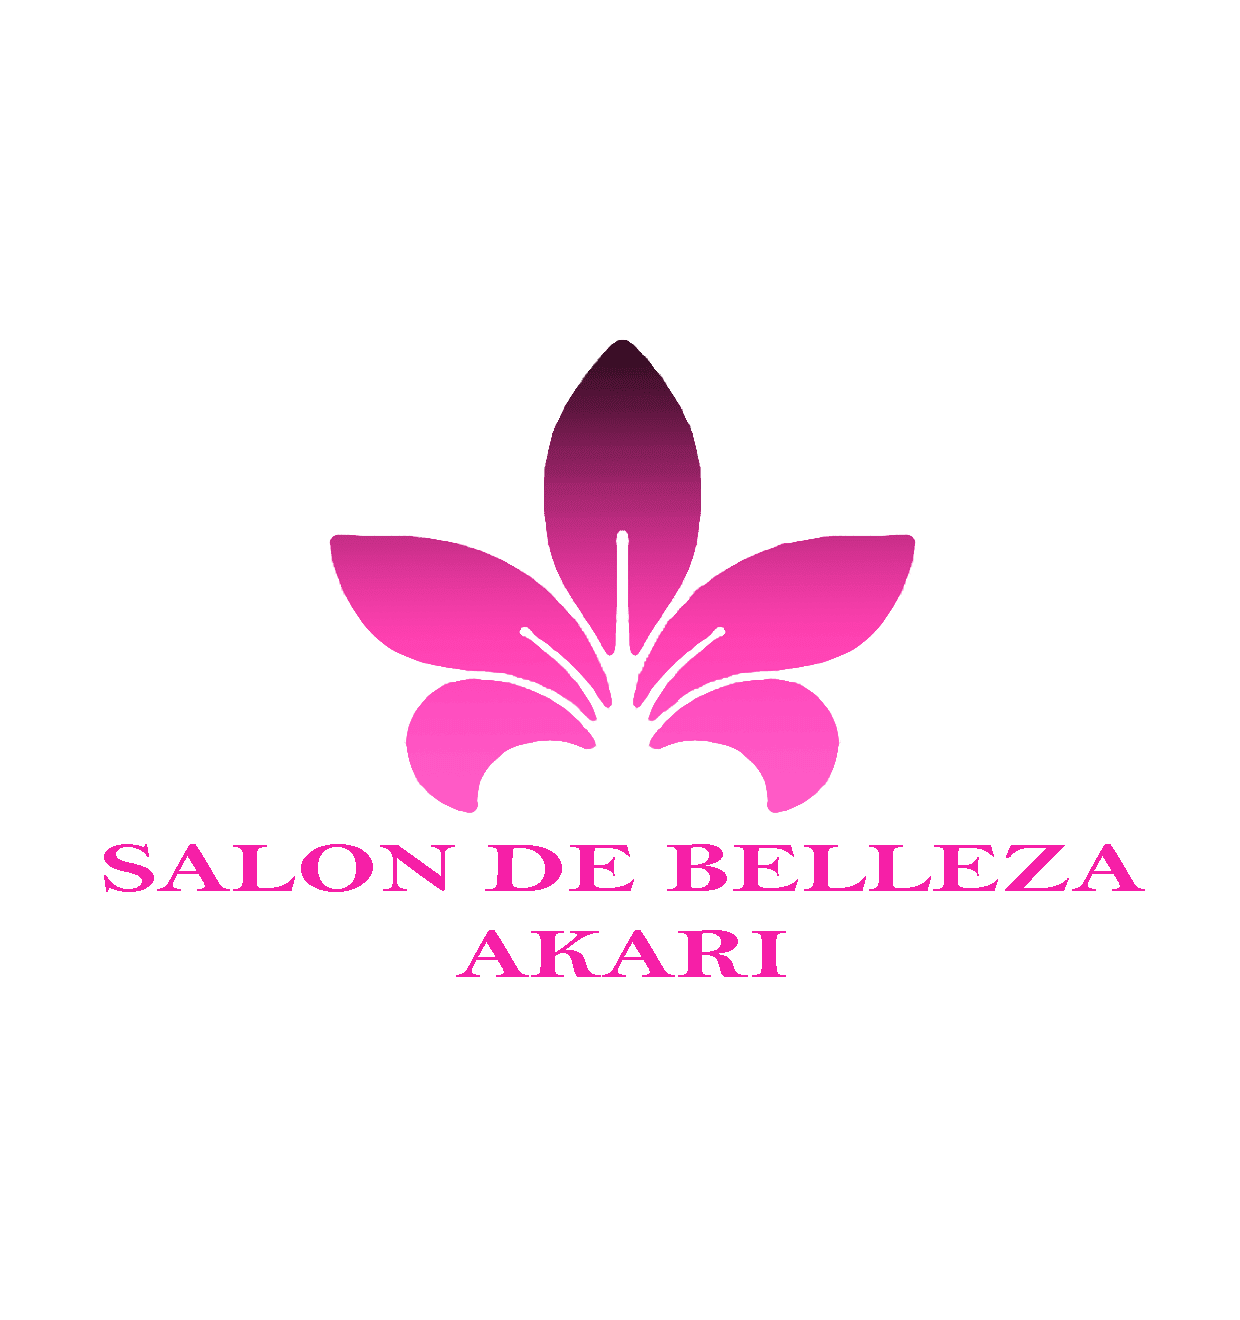 Salón De Belleza Akari